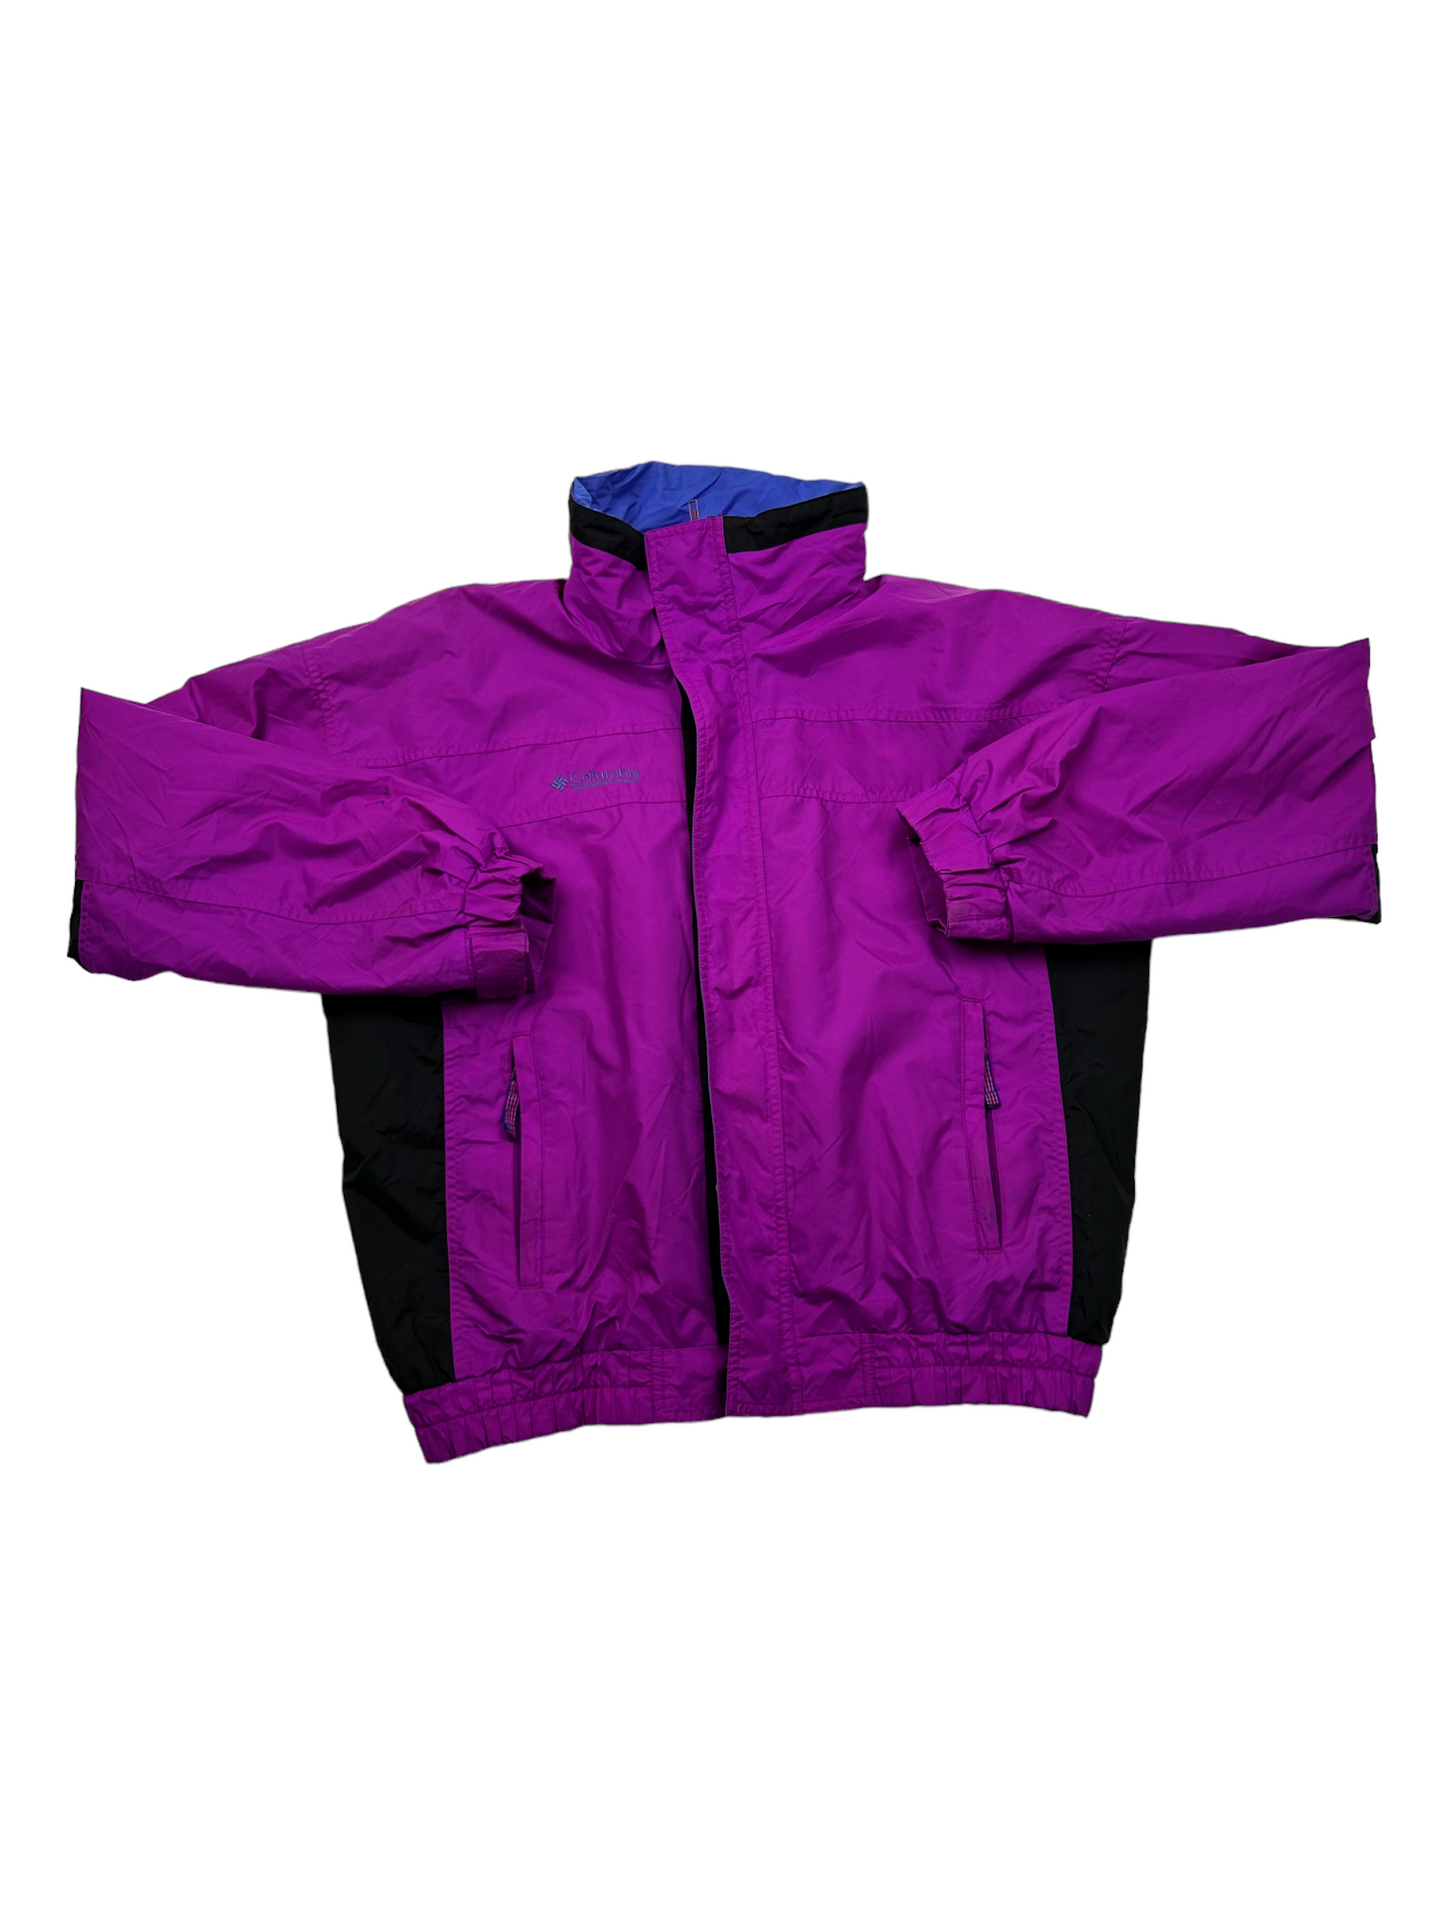 Columbia Purple Jacket